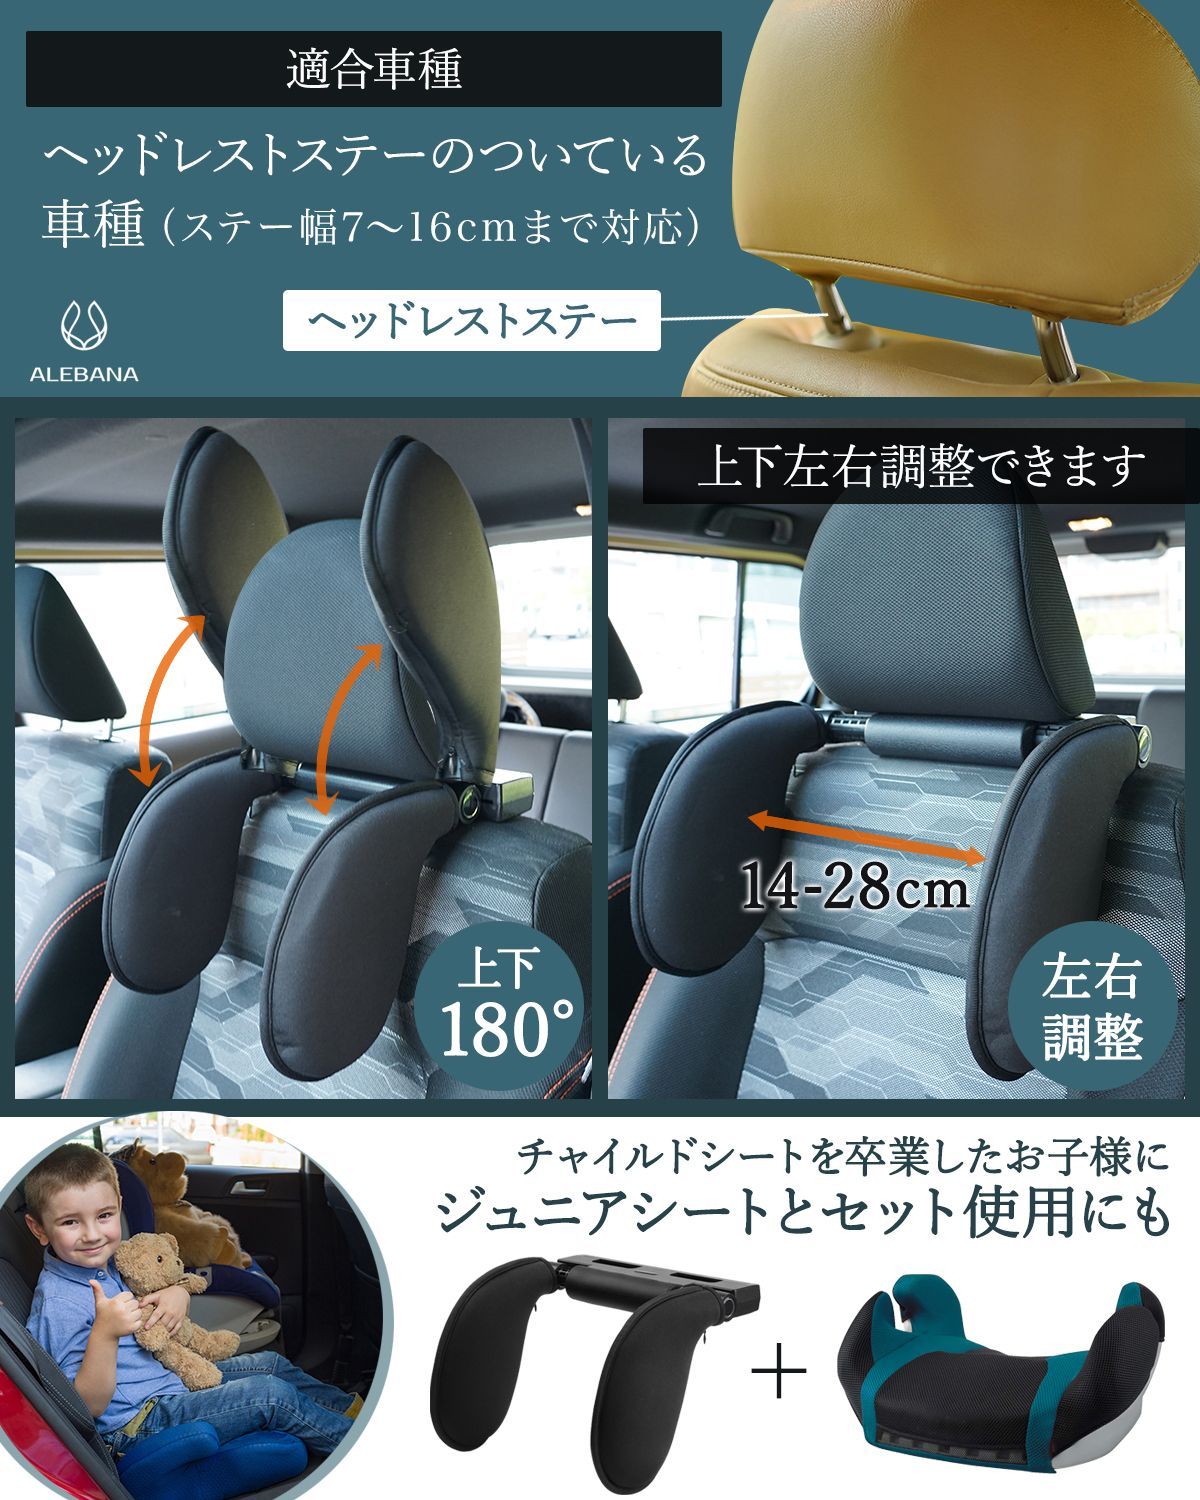 ネックピロー 子供 車 枕 ネックパッド ジュニアシート (ベーシックタイプ) alebana公式ショップ メルカリ